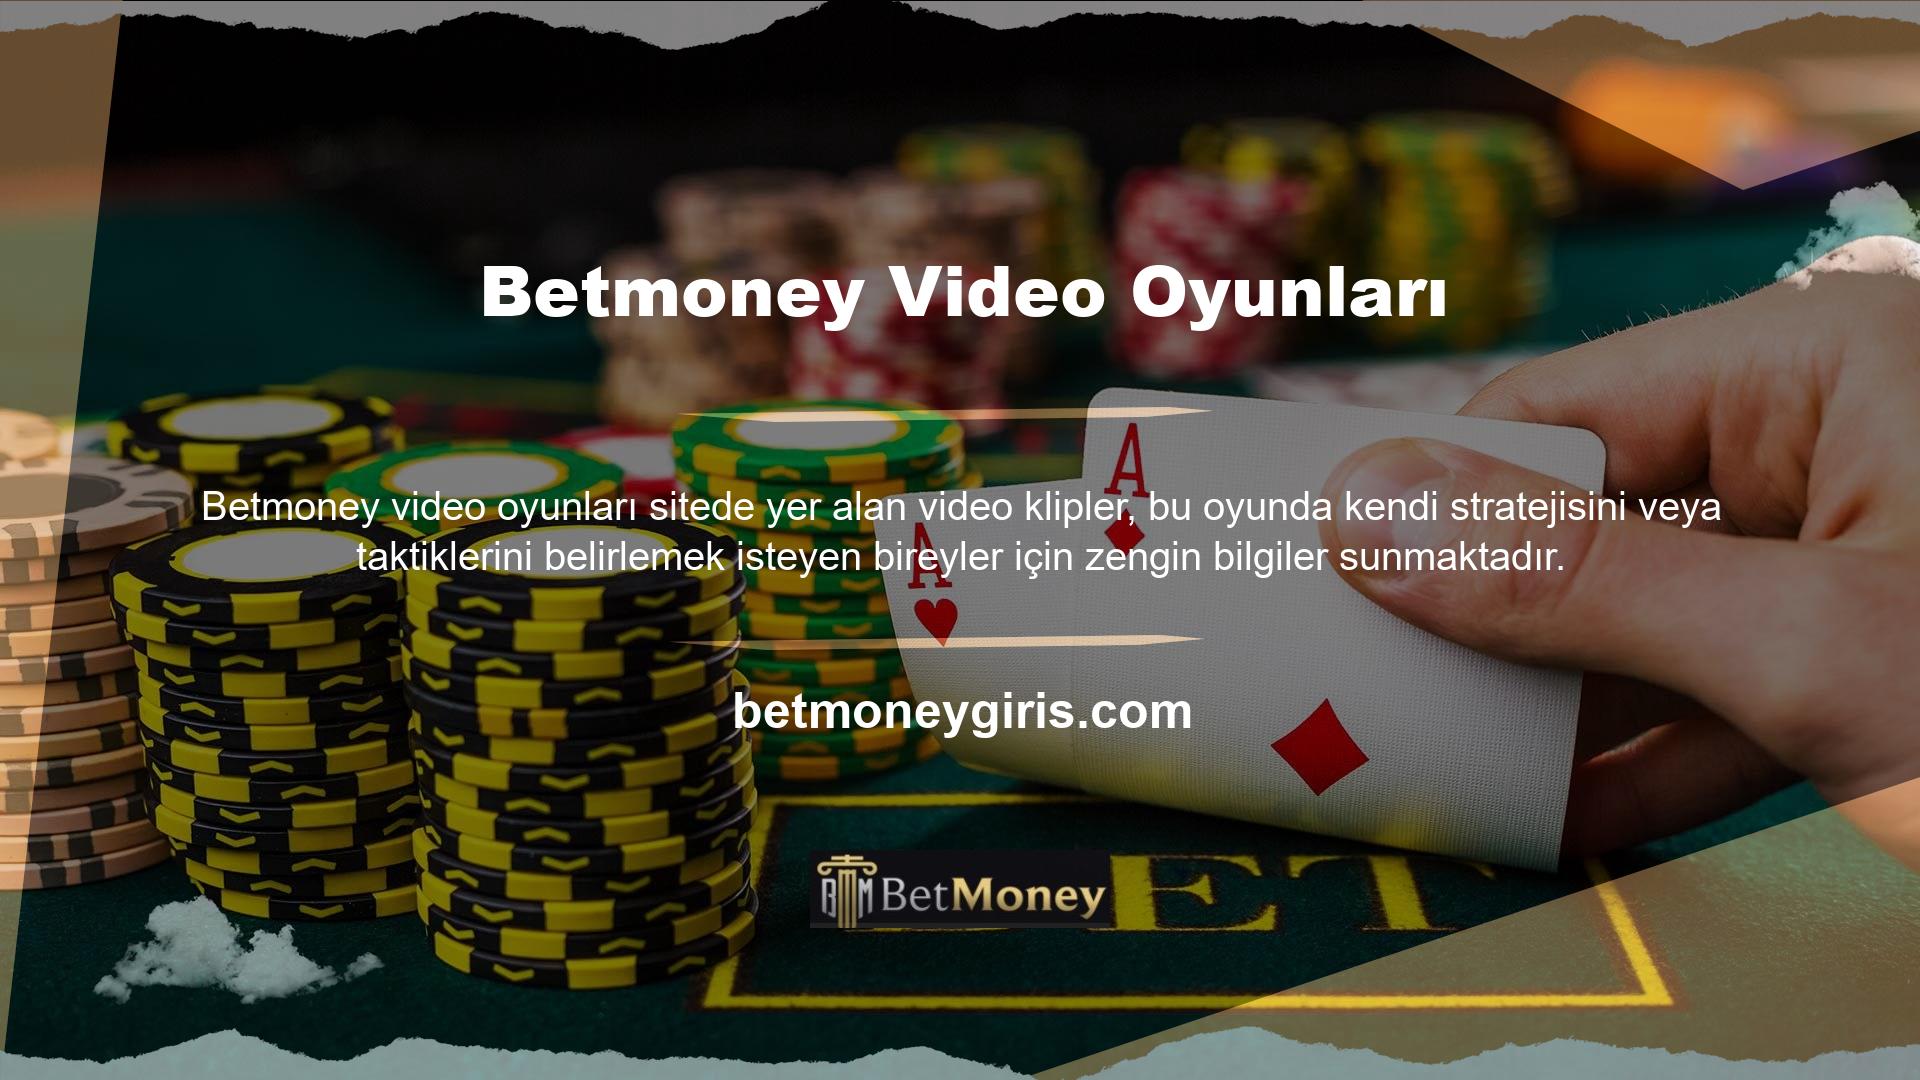 Betmoney Las Vegas tarzı Black Jack oyununun tanıtım videosu, üyelerin farklı seçenekler arasından seçim yapmasına olanak sağlamak için casino bölümünde aynı oyunun çeşitli varyasyonlarını sergiliyor